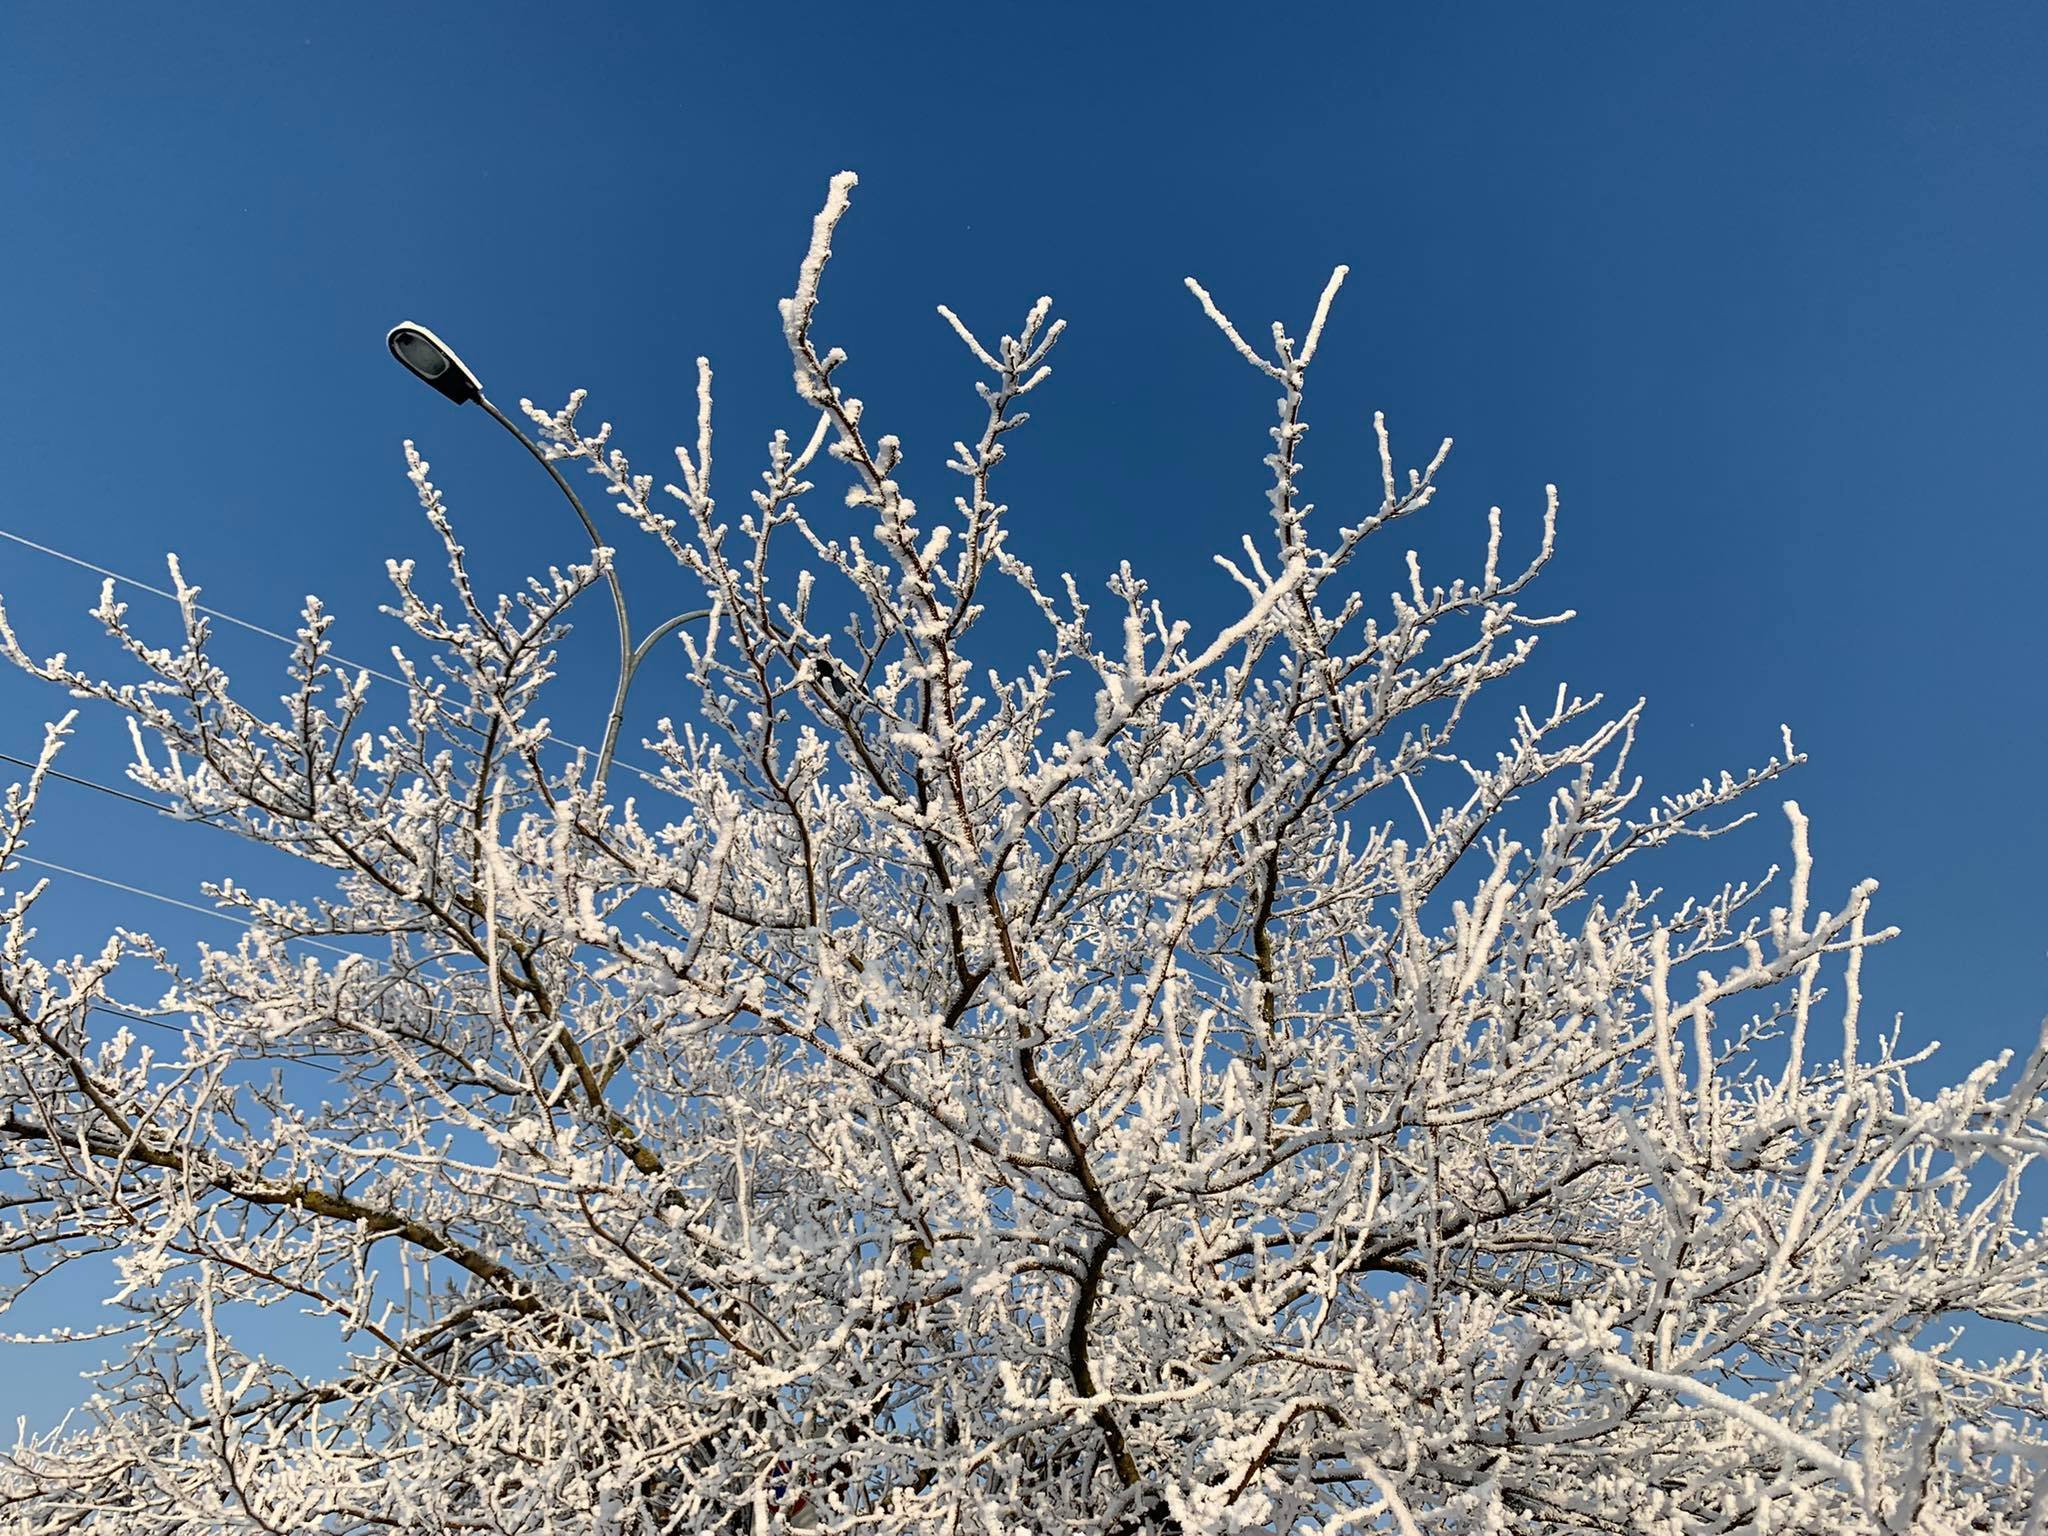 Tutto il fascino dell’inverno ad Alessandria: gli alberi imbiancati dal gelo [FOTOGALLERY]